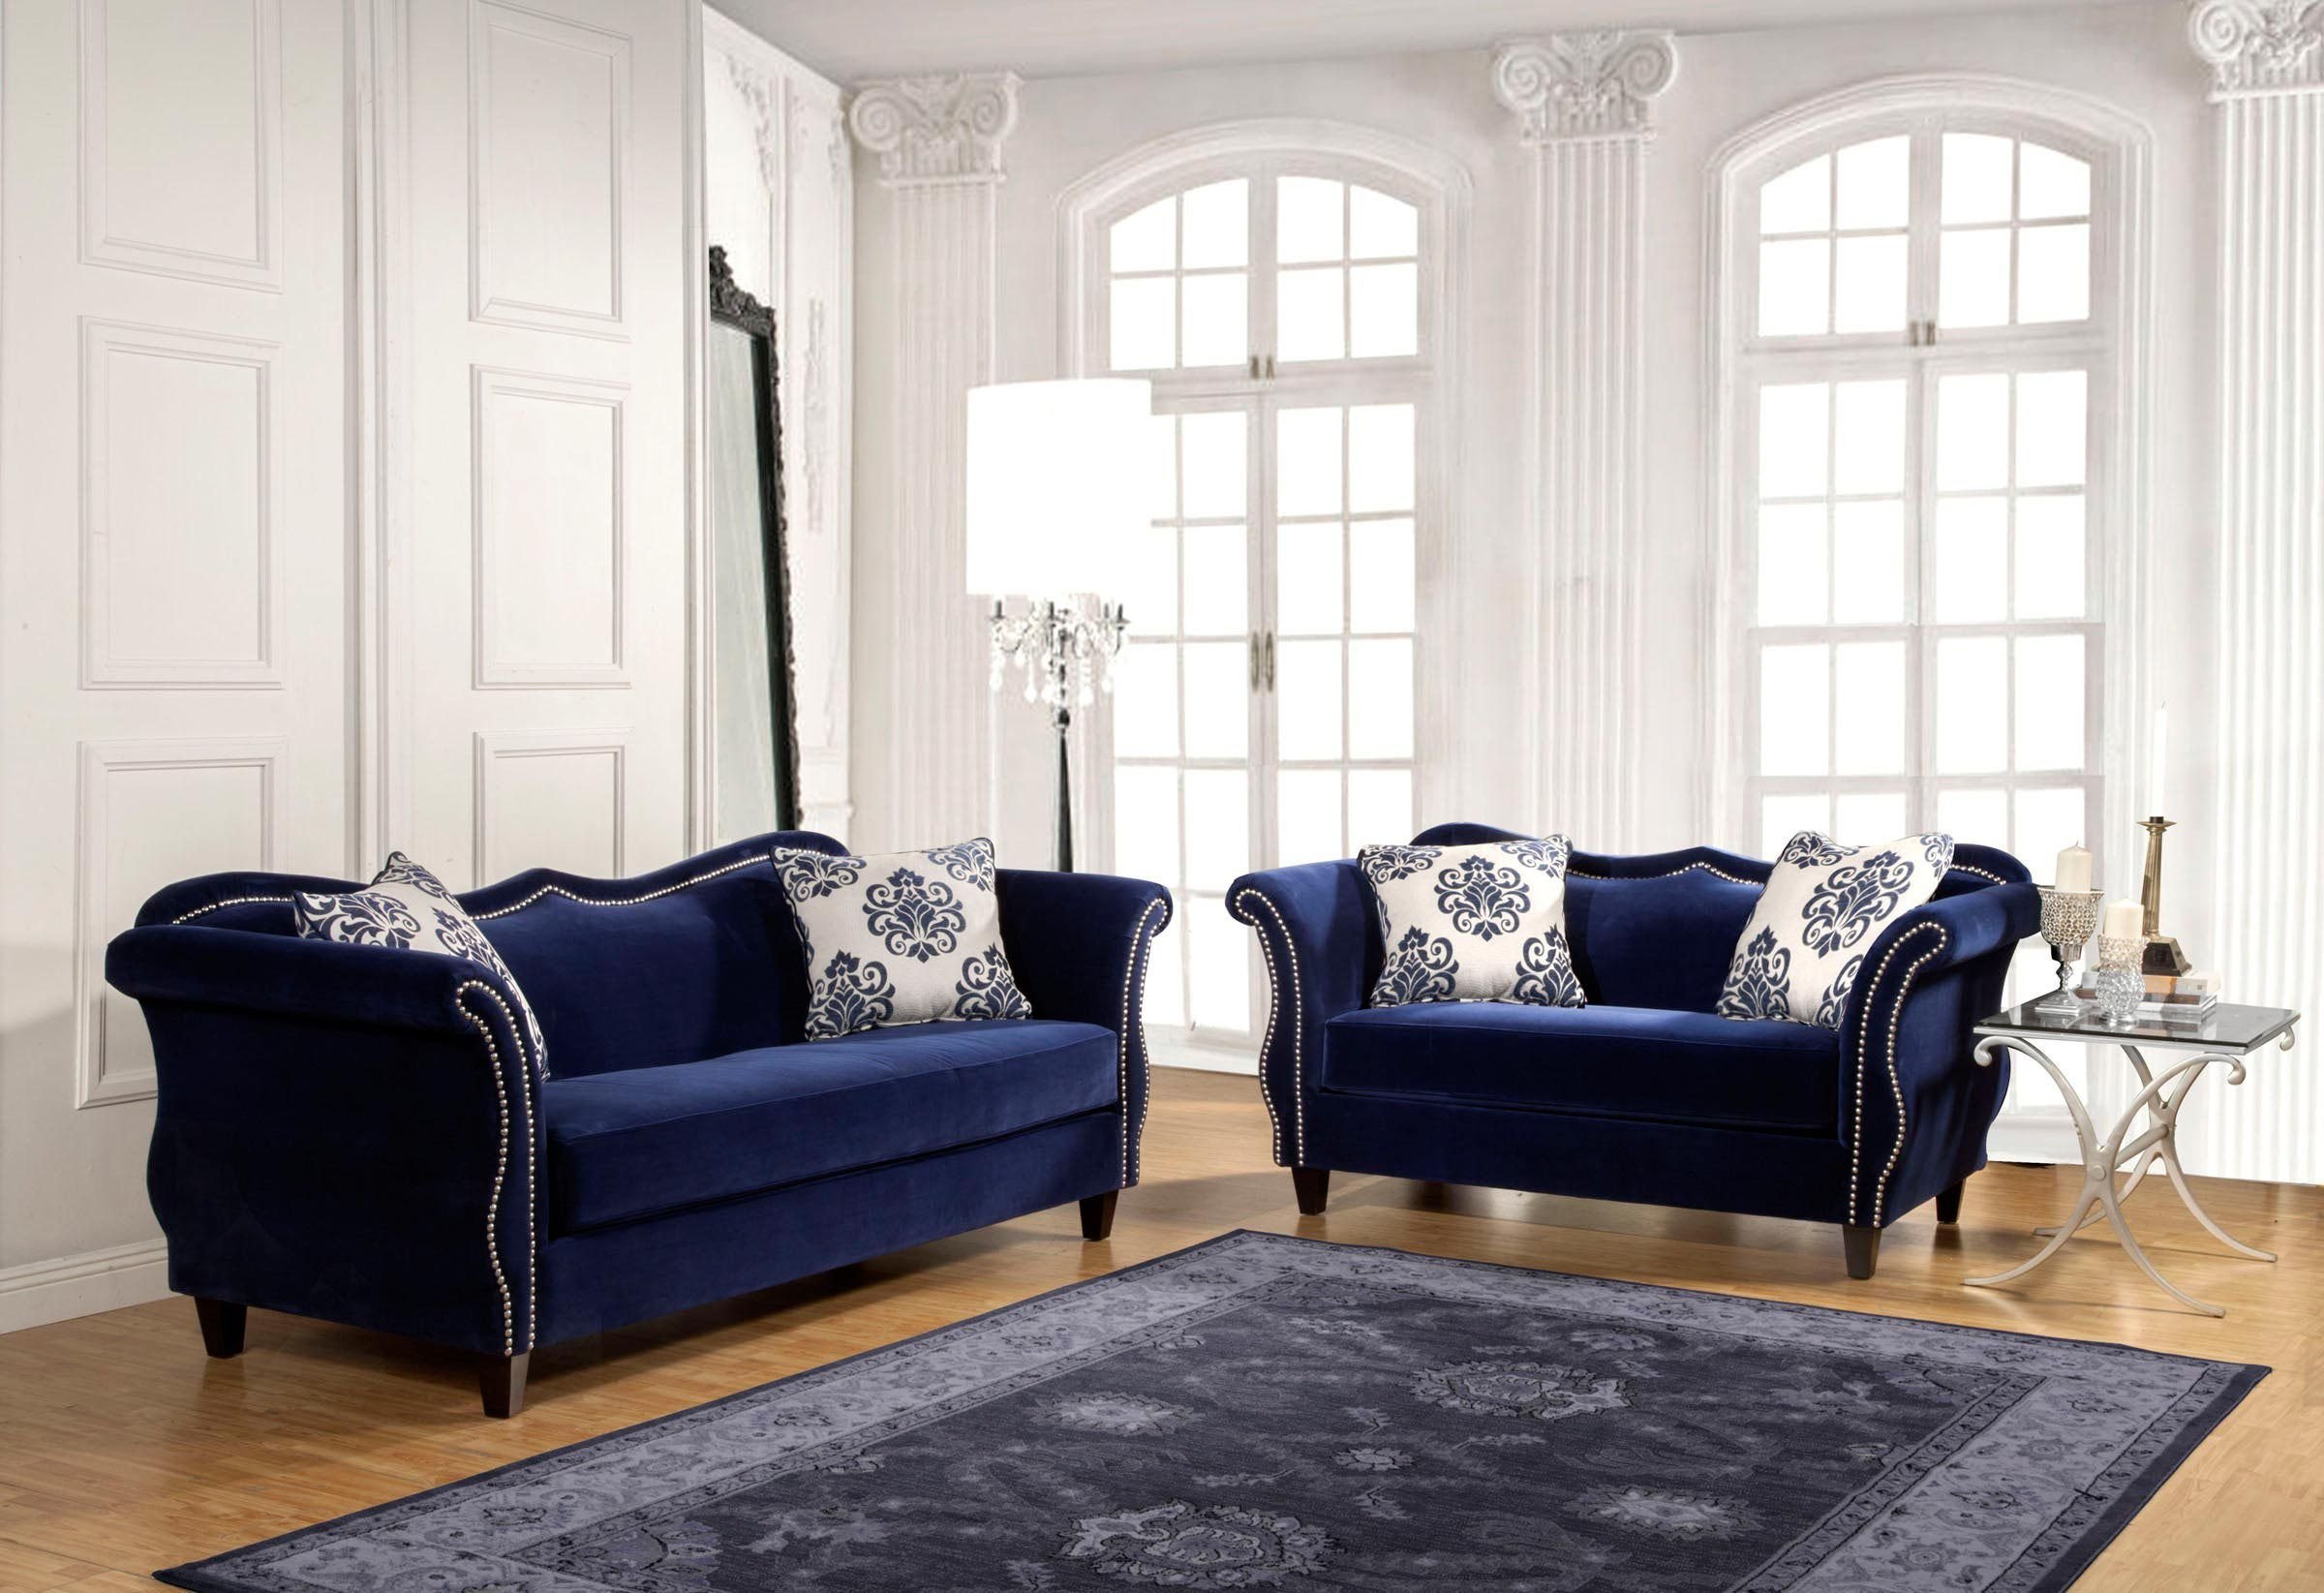 мягкая мебель синяя интерьер